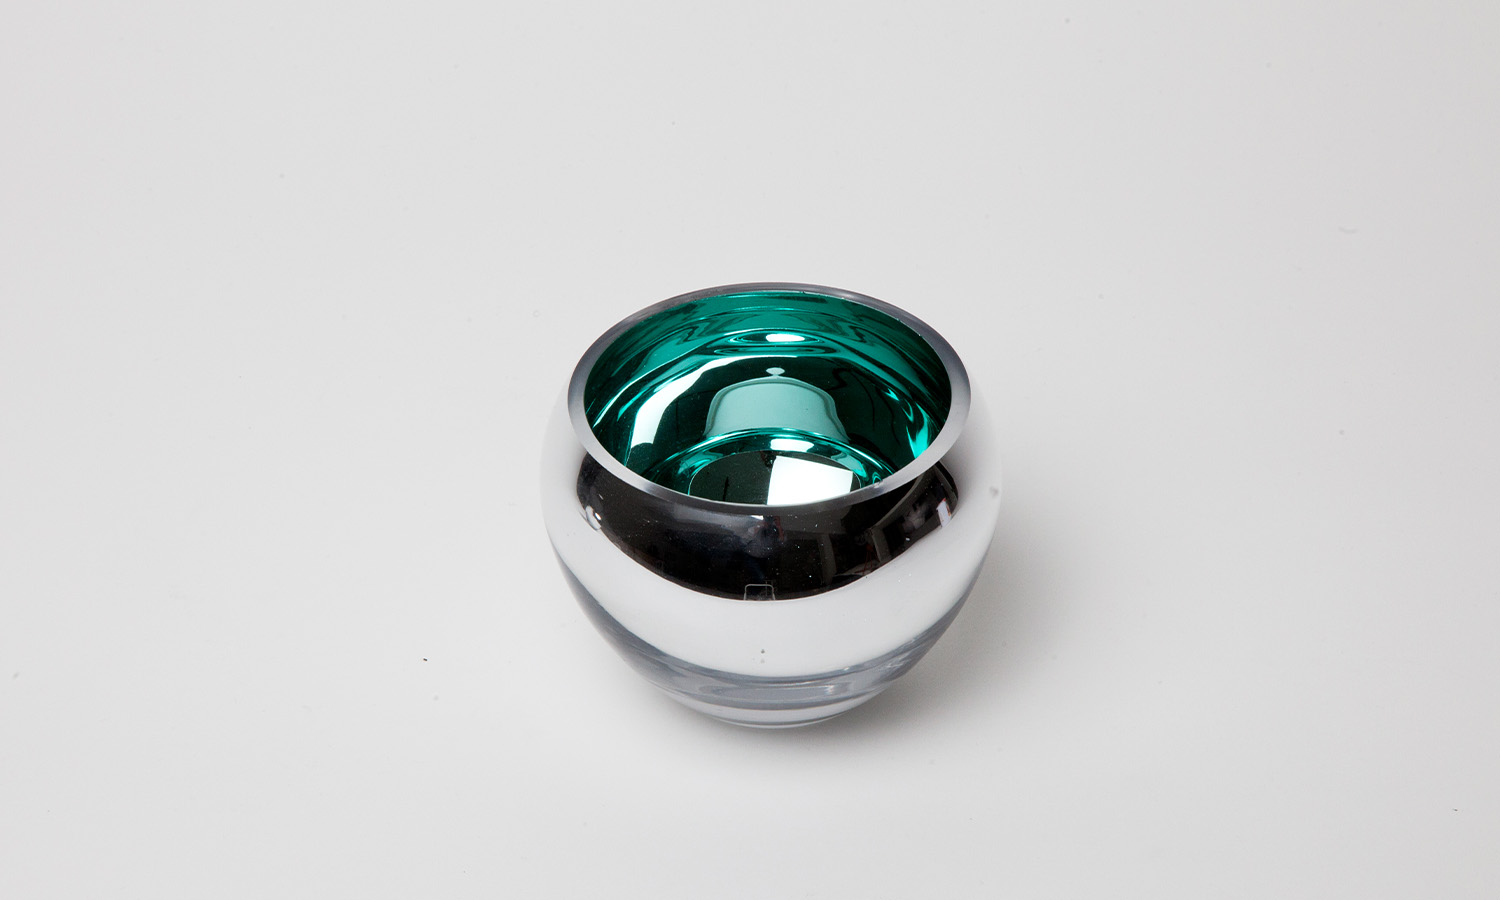 Fink - Windlicht - Teelichthalter - Colore - verspiegeltes Glas - türkis - Ø 12 cm